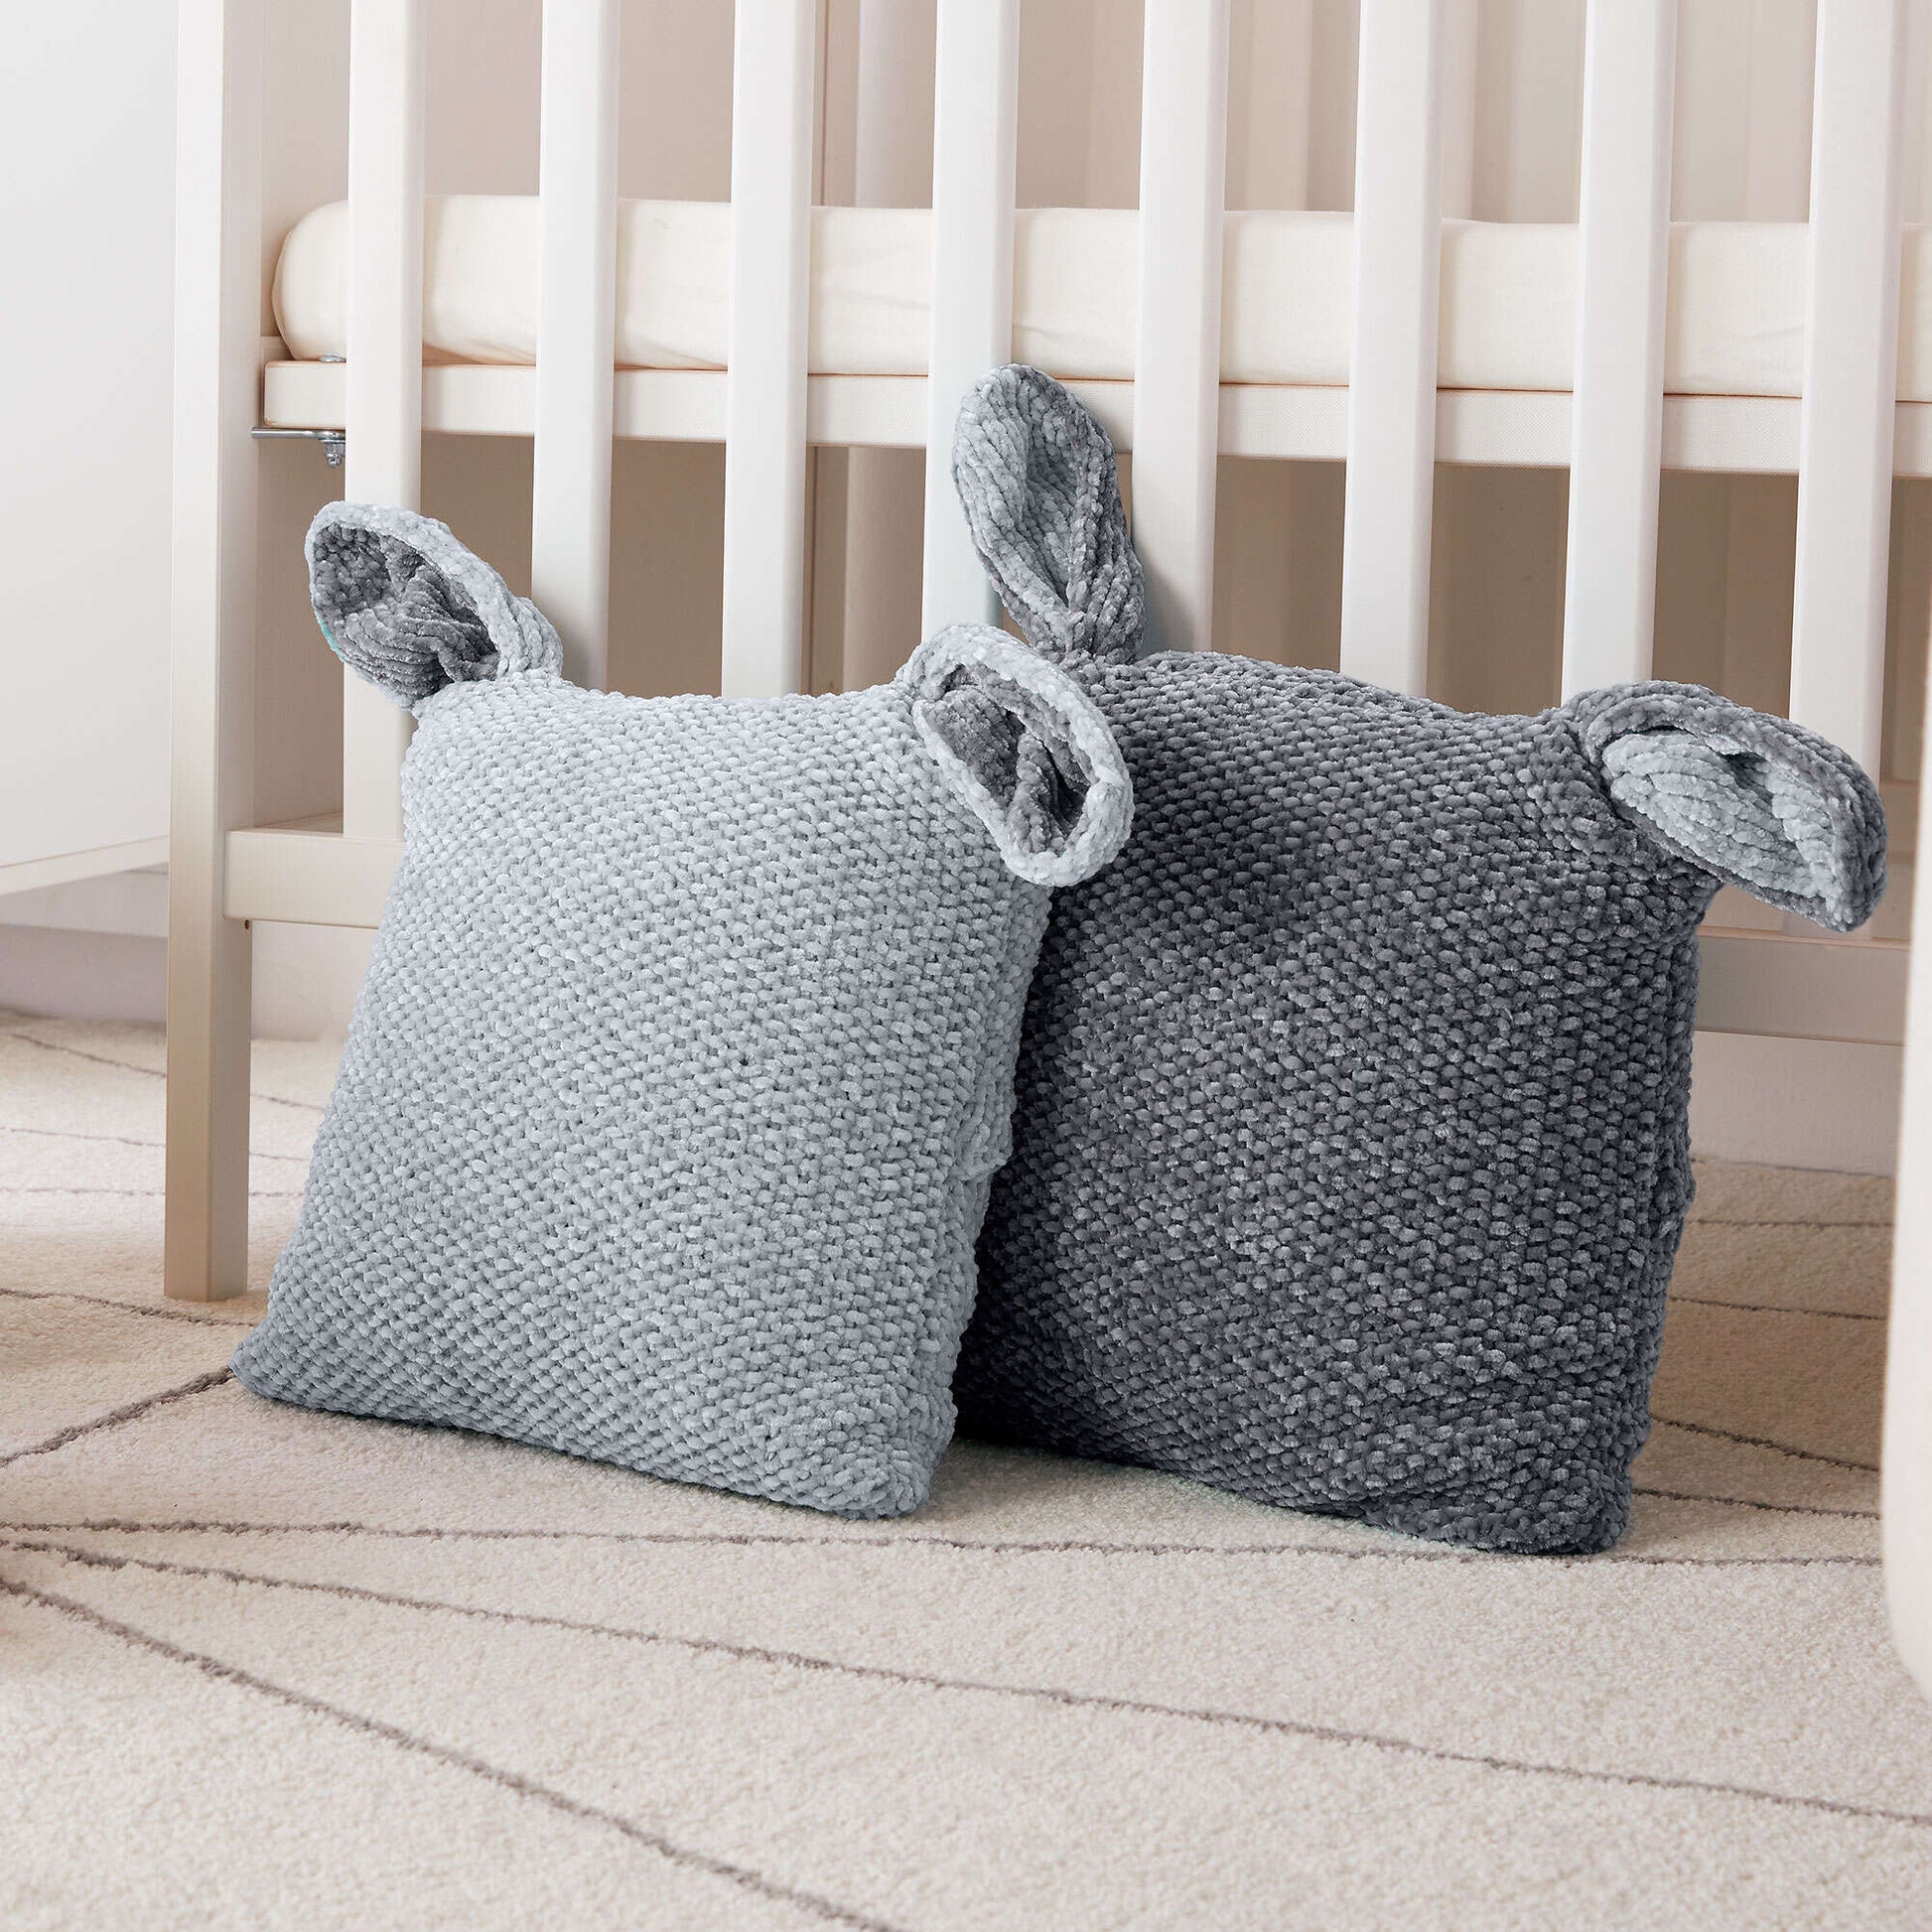 Bernat Knit Bunny Pillows Tiny Teal